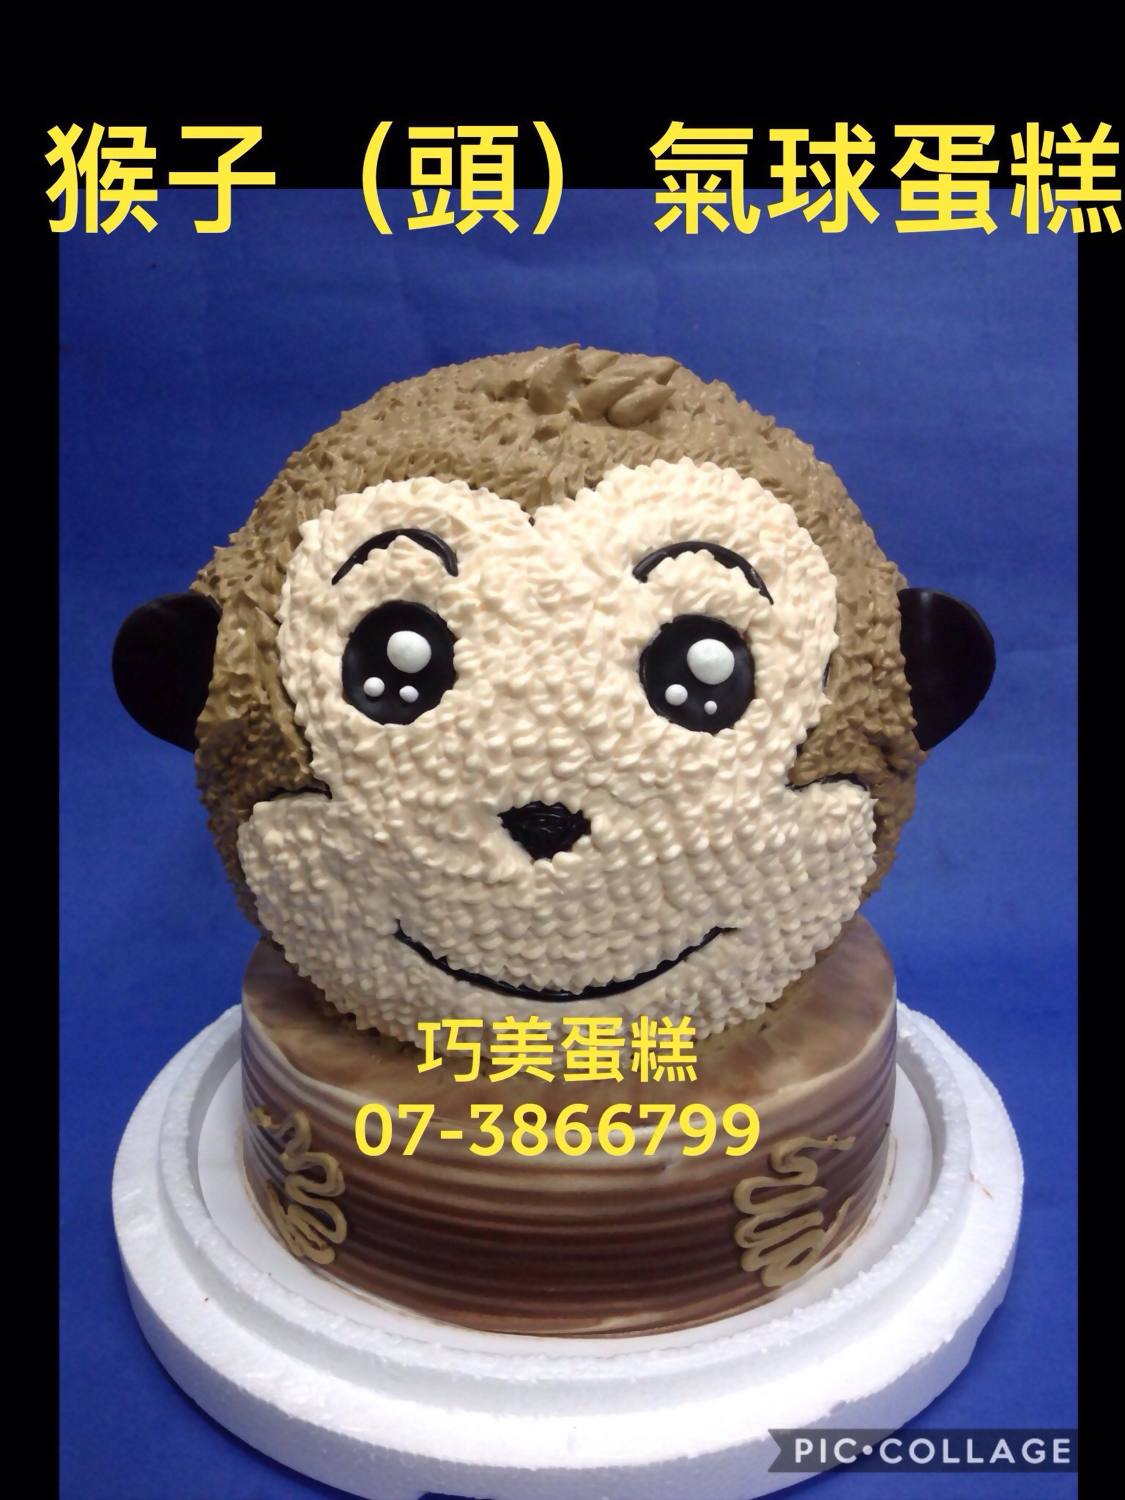 猴子蛋糕图片新款图片-图库-五毛网